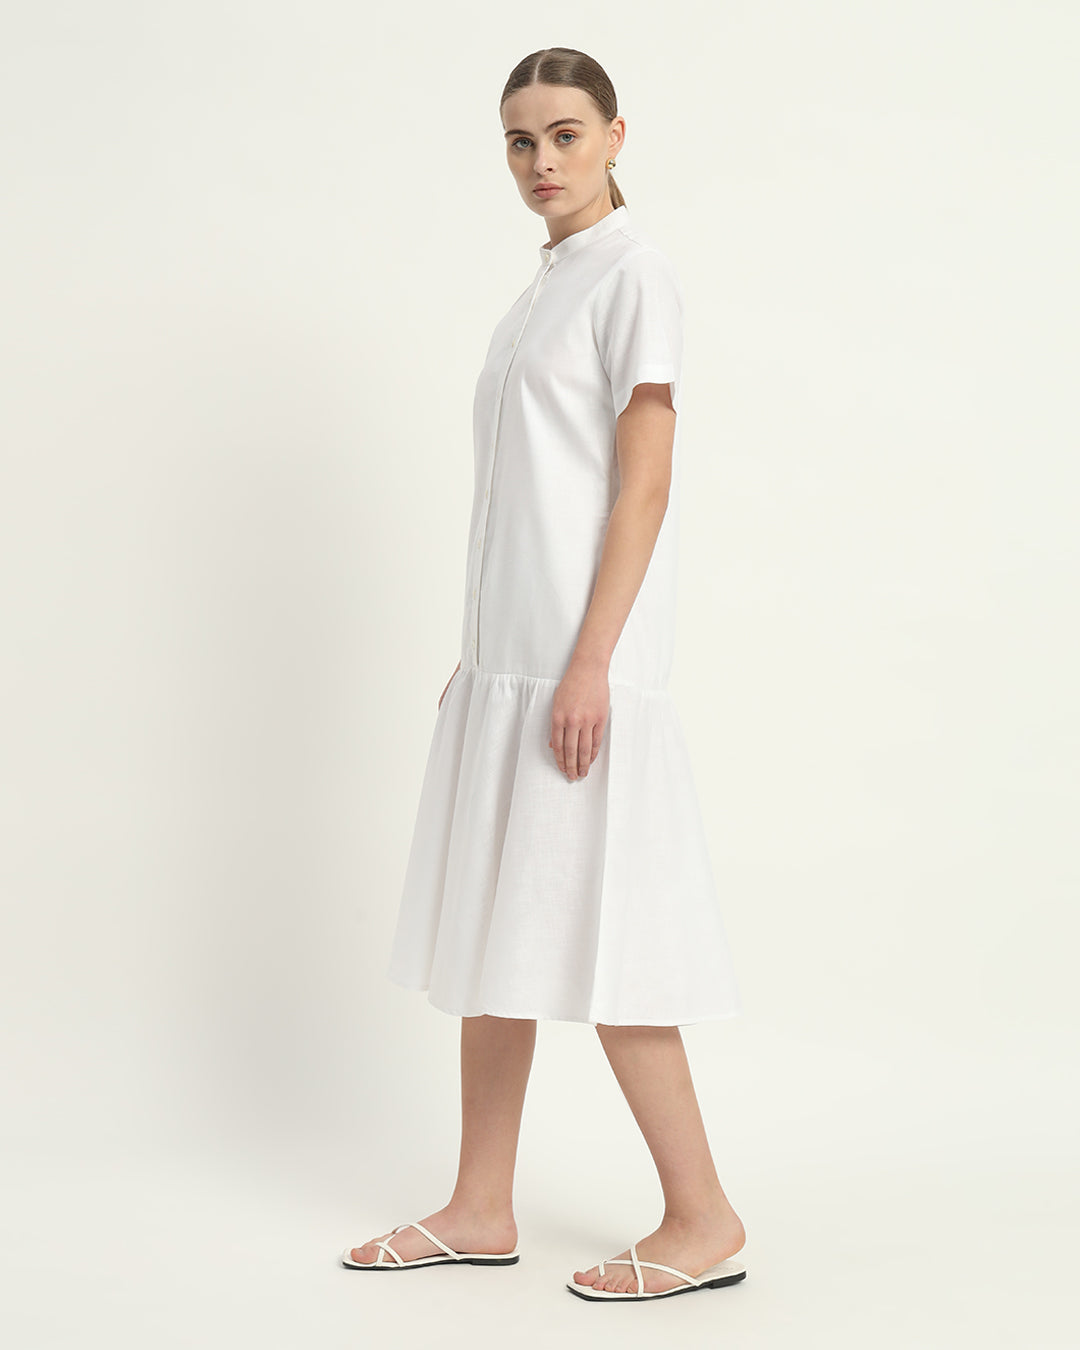 Daisy White Melrose Linen Dress